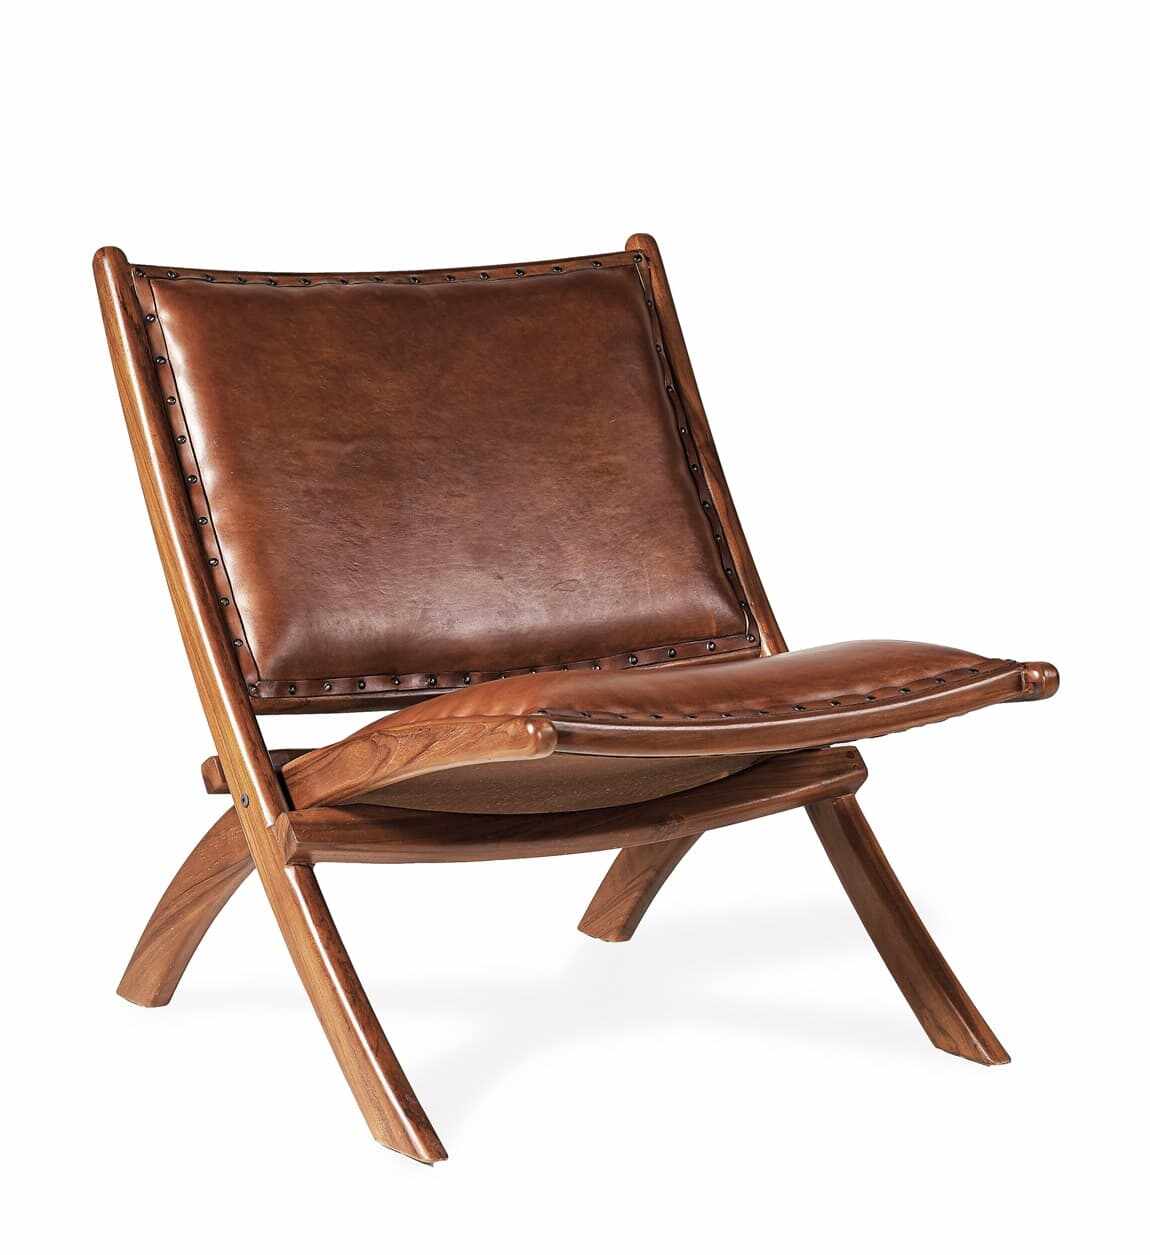 Scaun pliabil din lemn tapitat cu piele, Low Maro, l65xA88xH75 cm